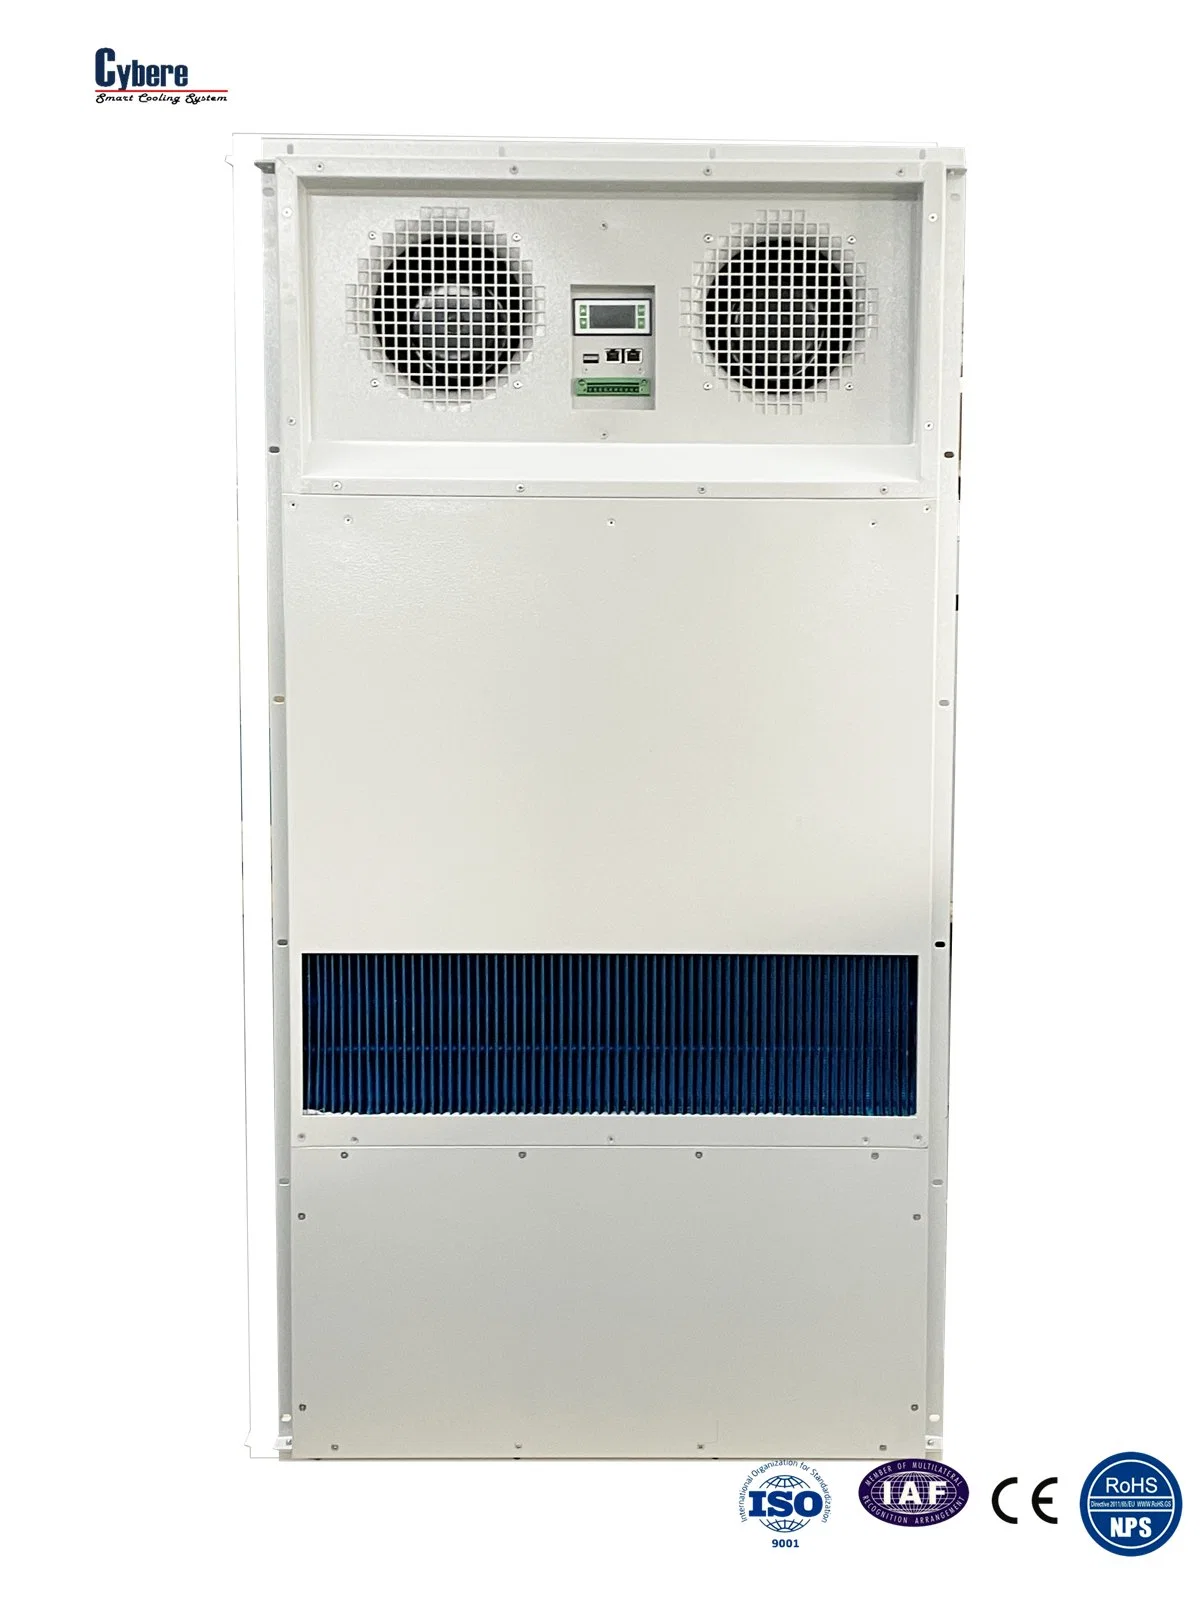 DC 260W/k de aire del intercambiador de calor para el exterior del Gabinete de Telecomunicaciones la refrigeración pasiva